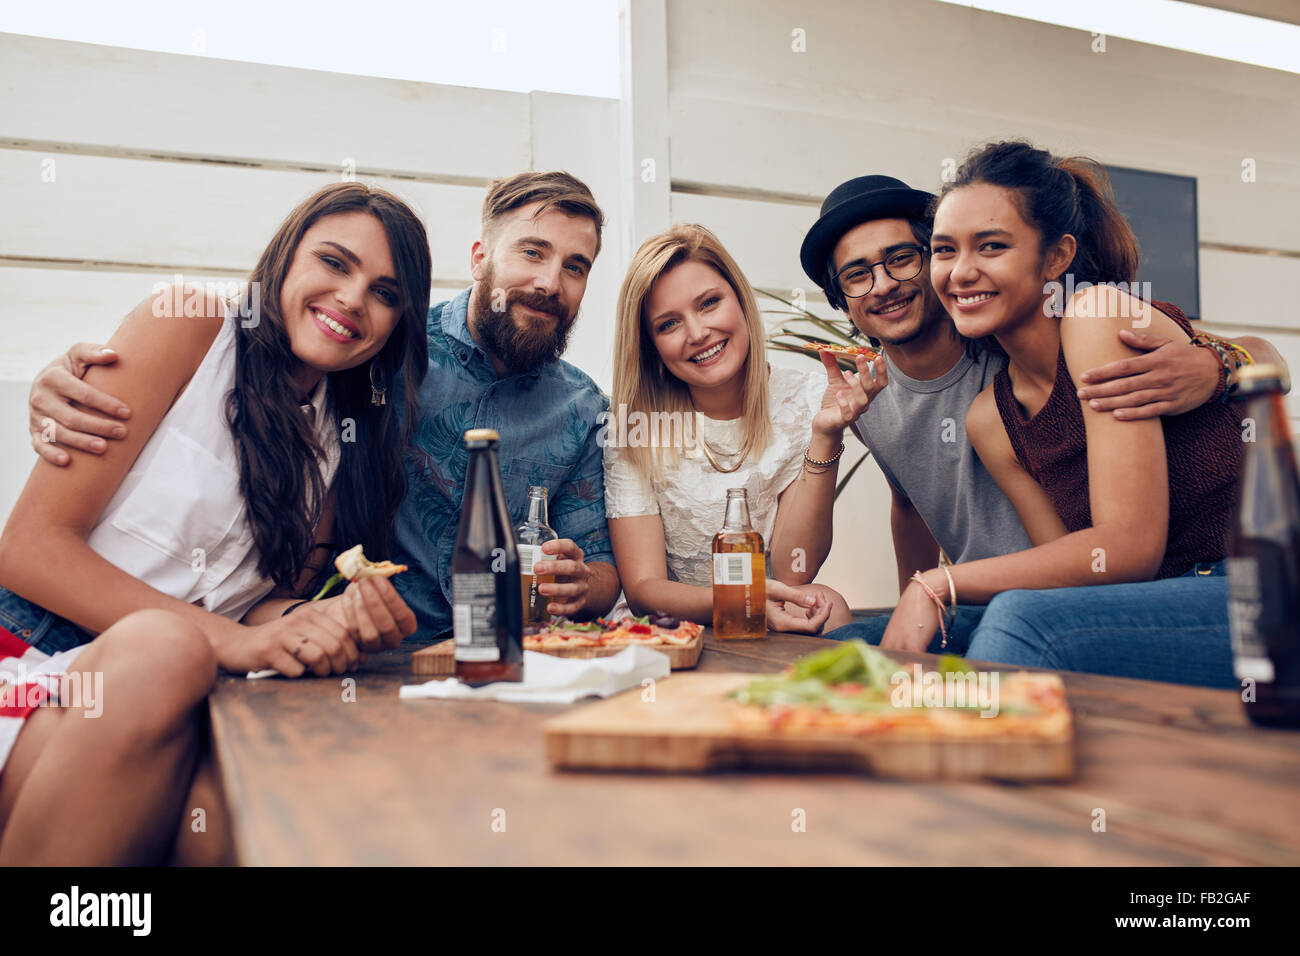 Gruppo di amici riuniti attorno al tavolo in corrispondenza di una parte del tetto. Multirazziale giovani guardando la fotocamera e sorridente. Foto Stock